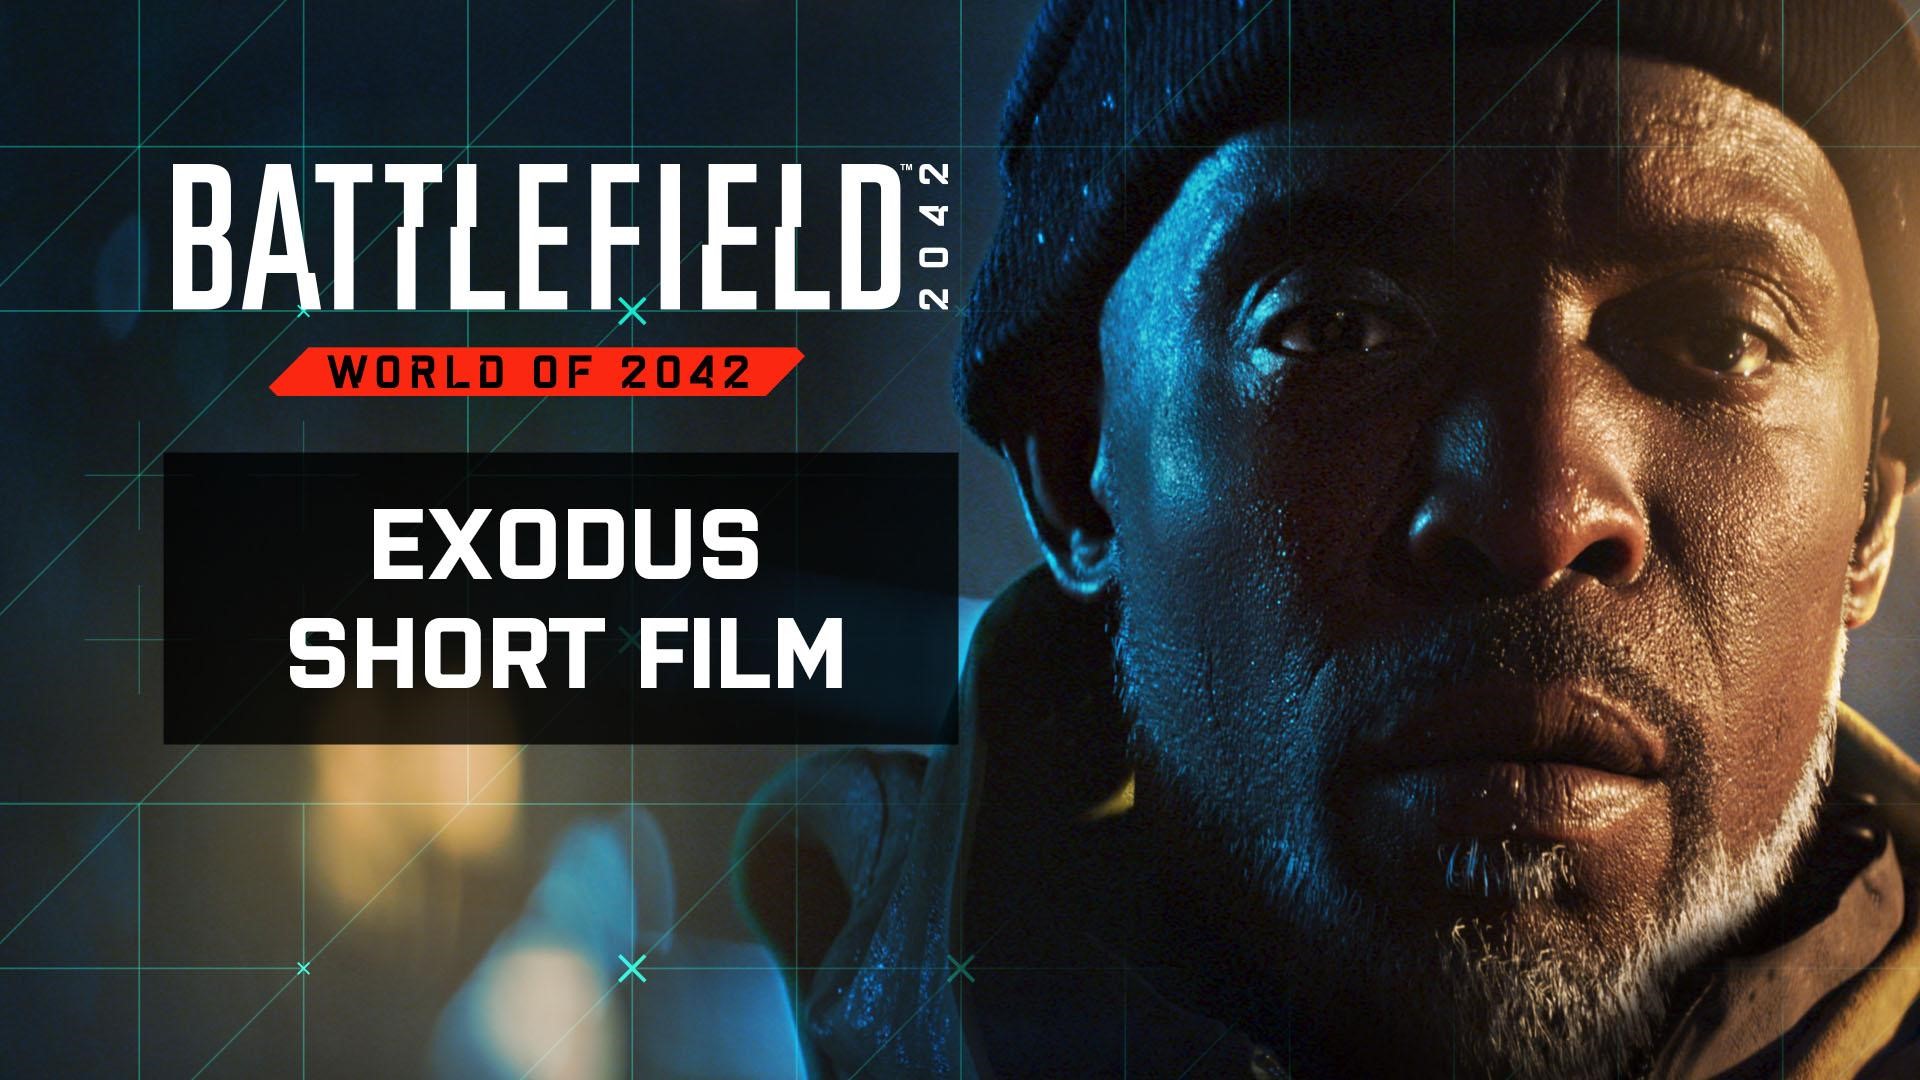 Electronic Arts y DICE han lanzado "Exodus", un cortometraje que ofrece una mirada más cercana a lo que inició la Guerra en Battlefield 2042